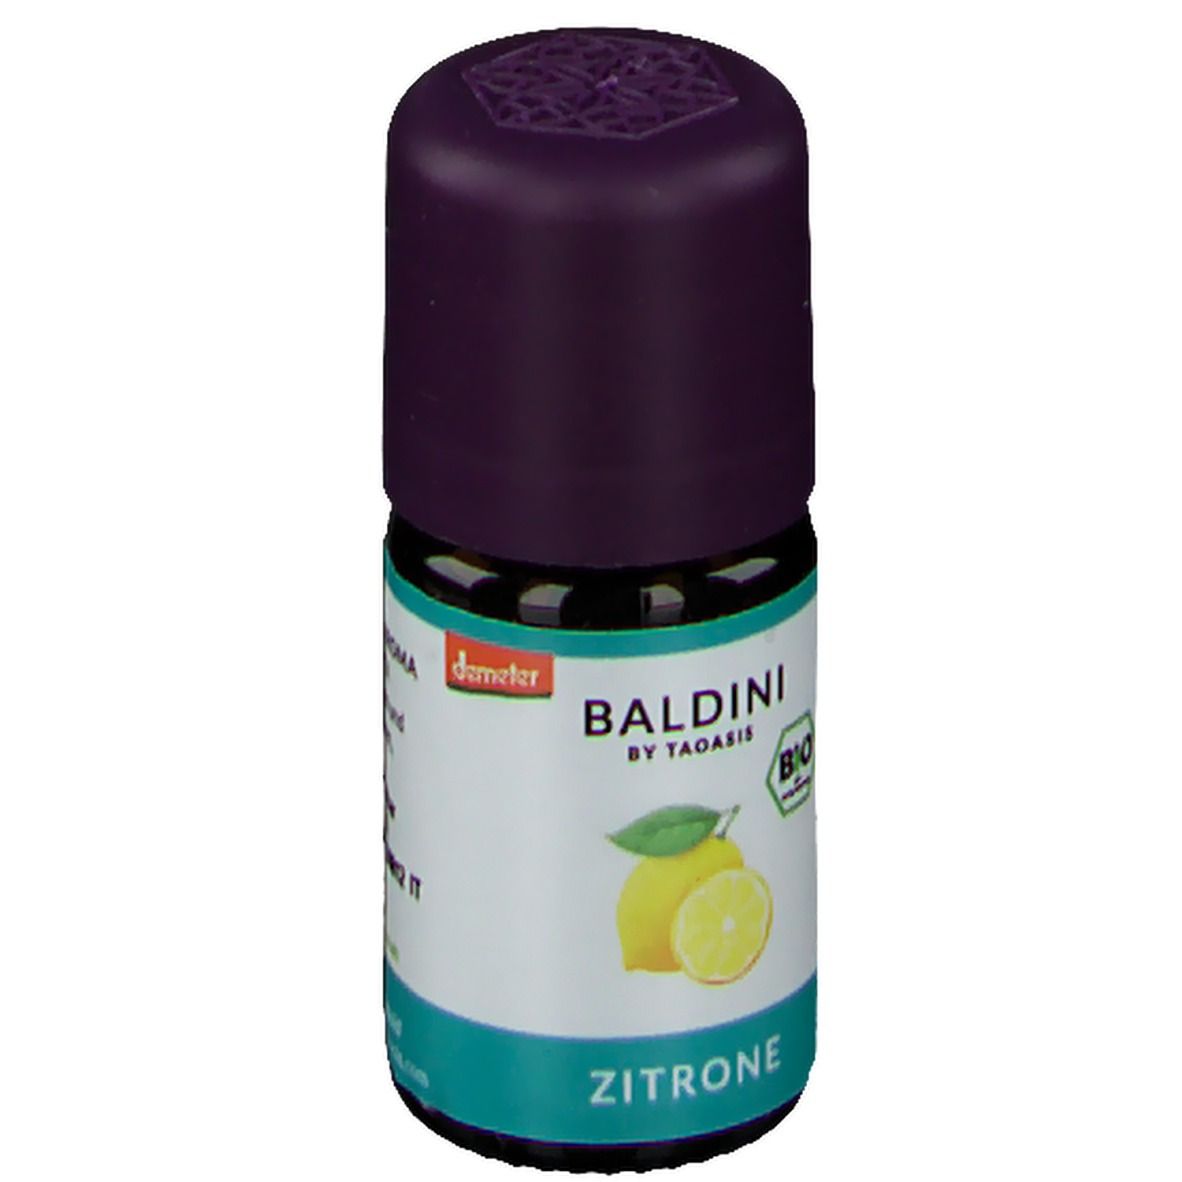 BALDINI BY TAOASIS BIO Zitrone Aromaöl